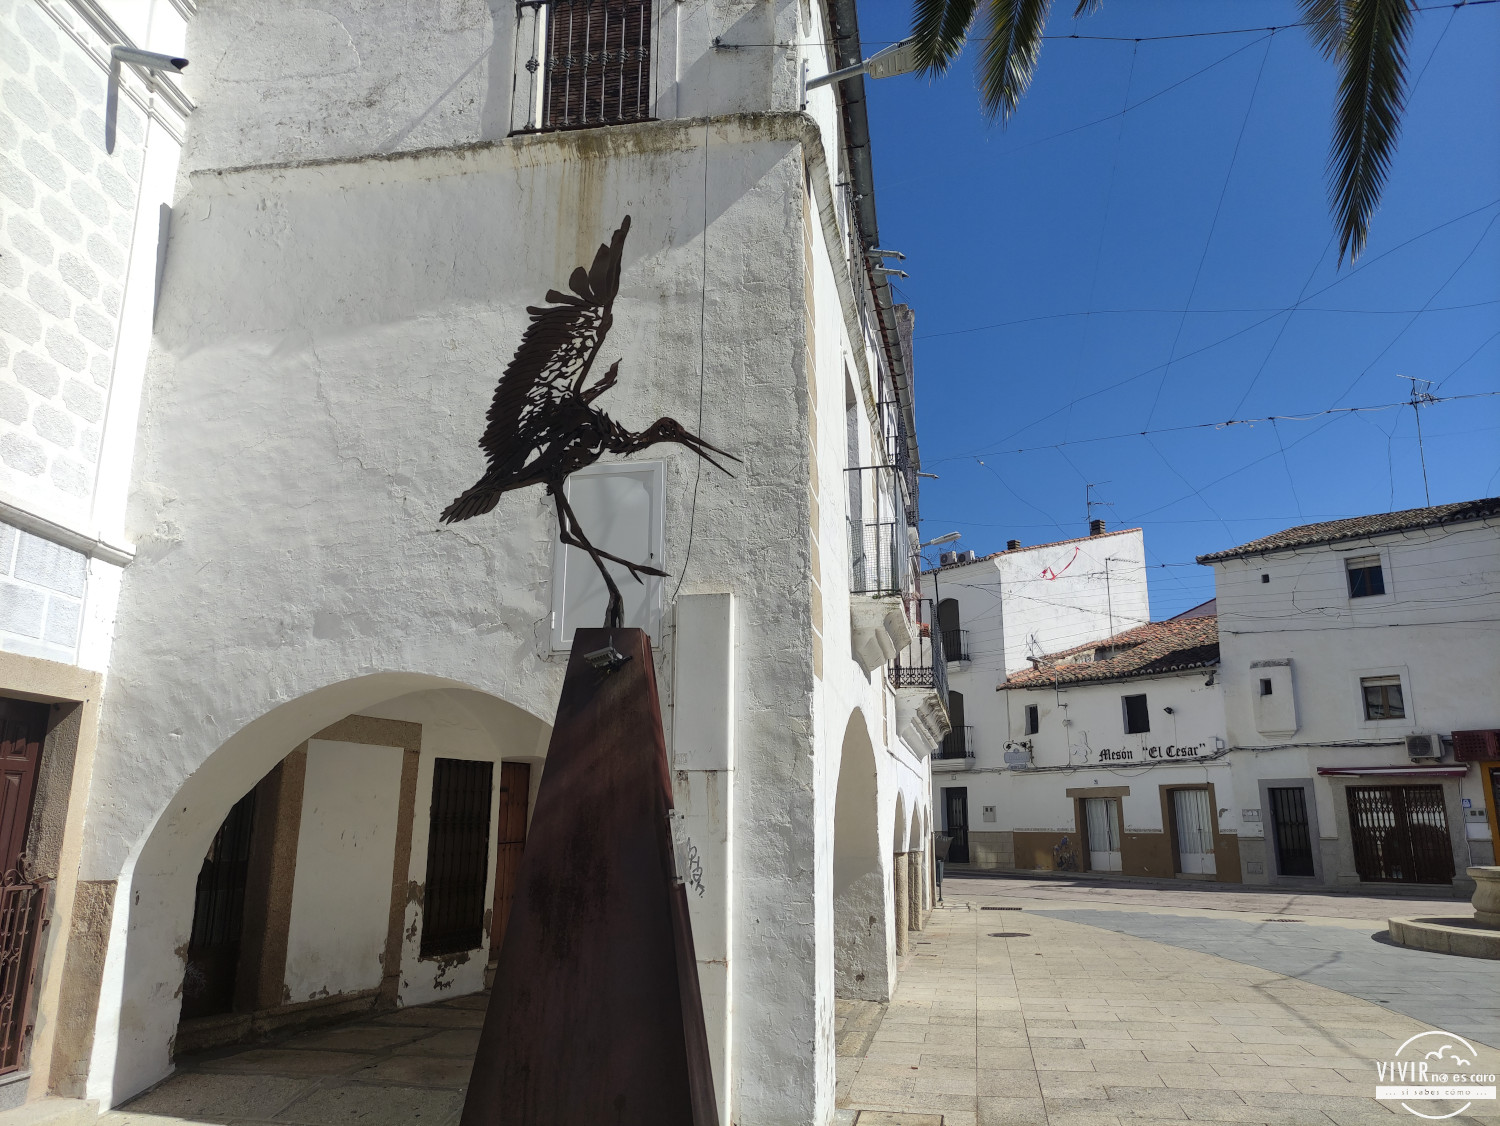 Estatua en homenaje a la cigüeña (Malpartida de Cáceres)